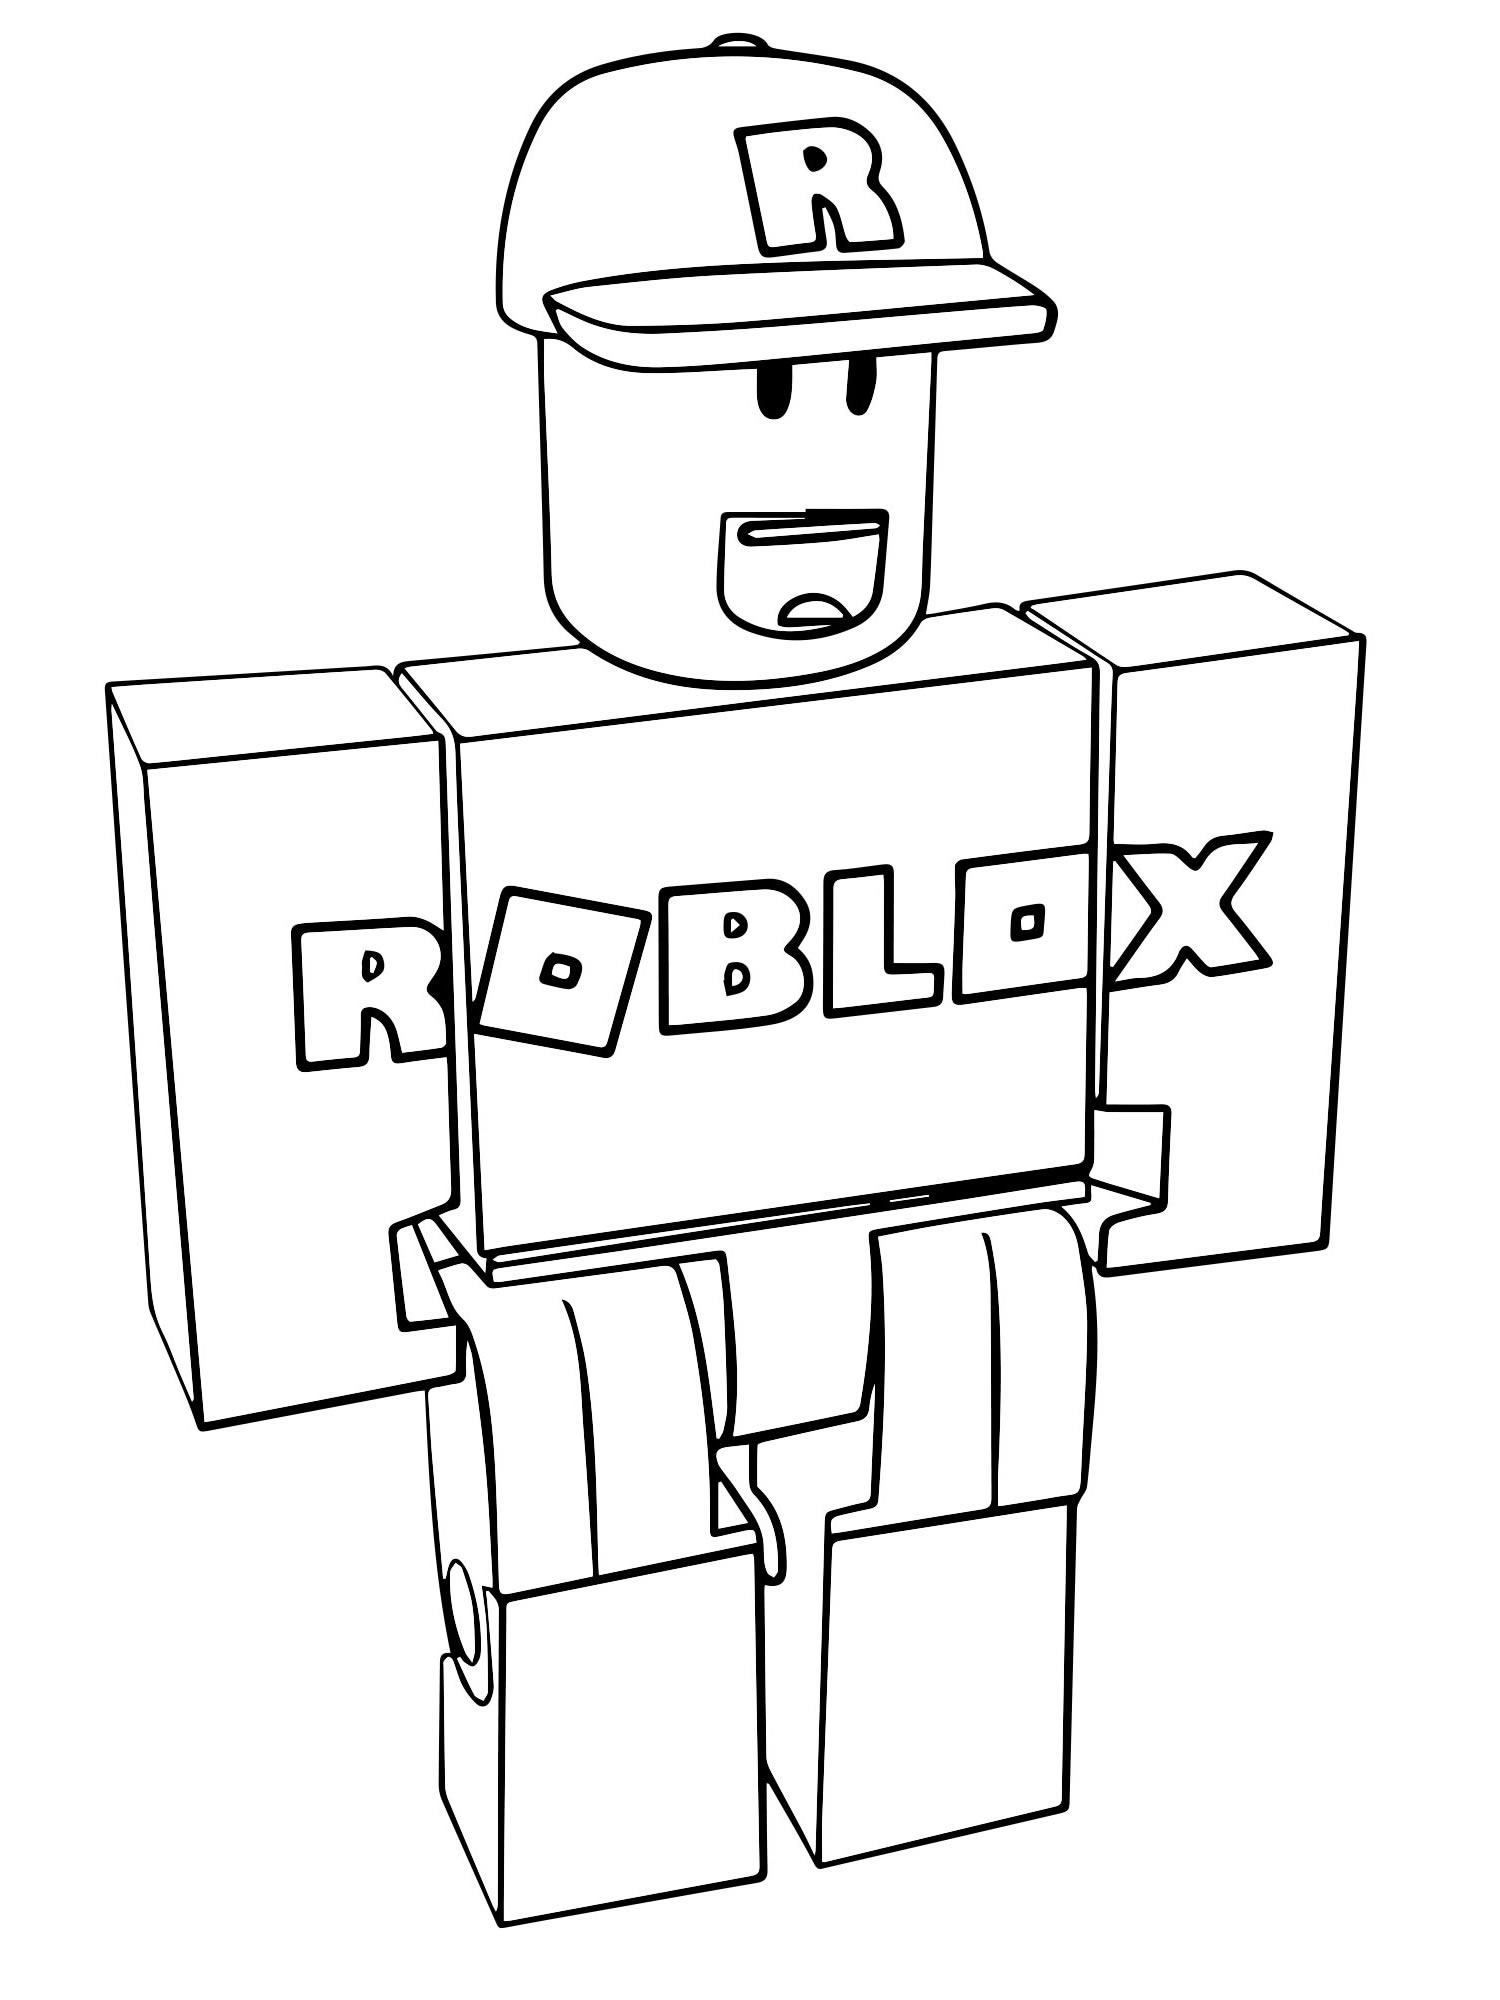 Roblox flickering icon coloring page